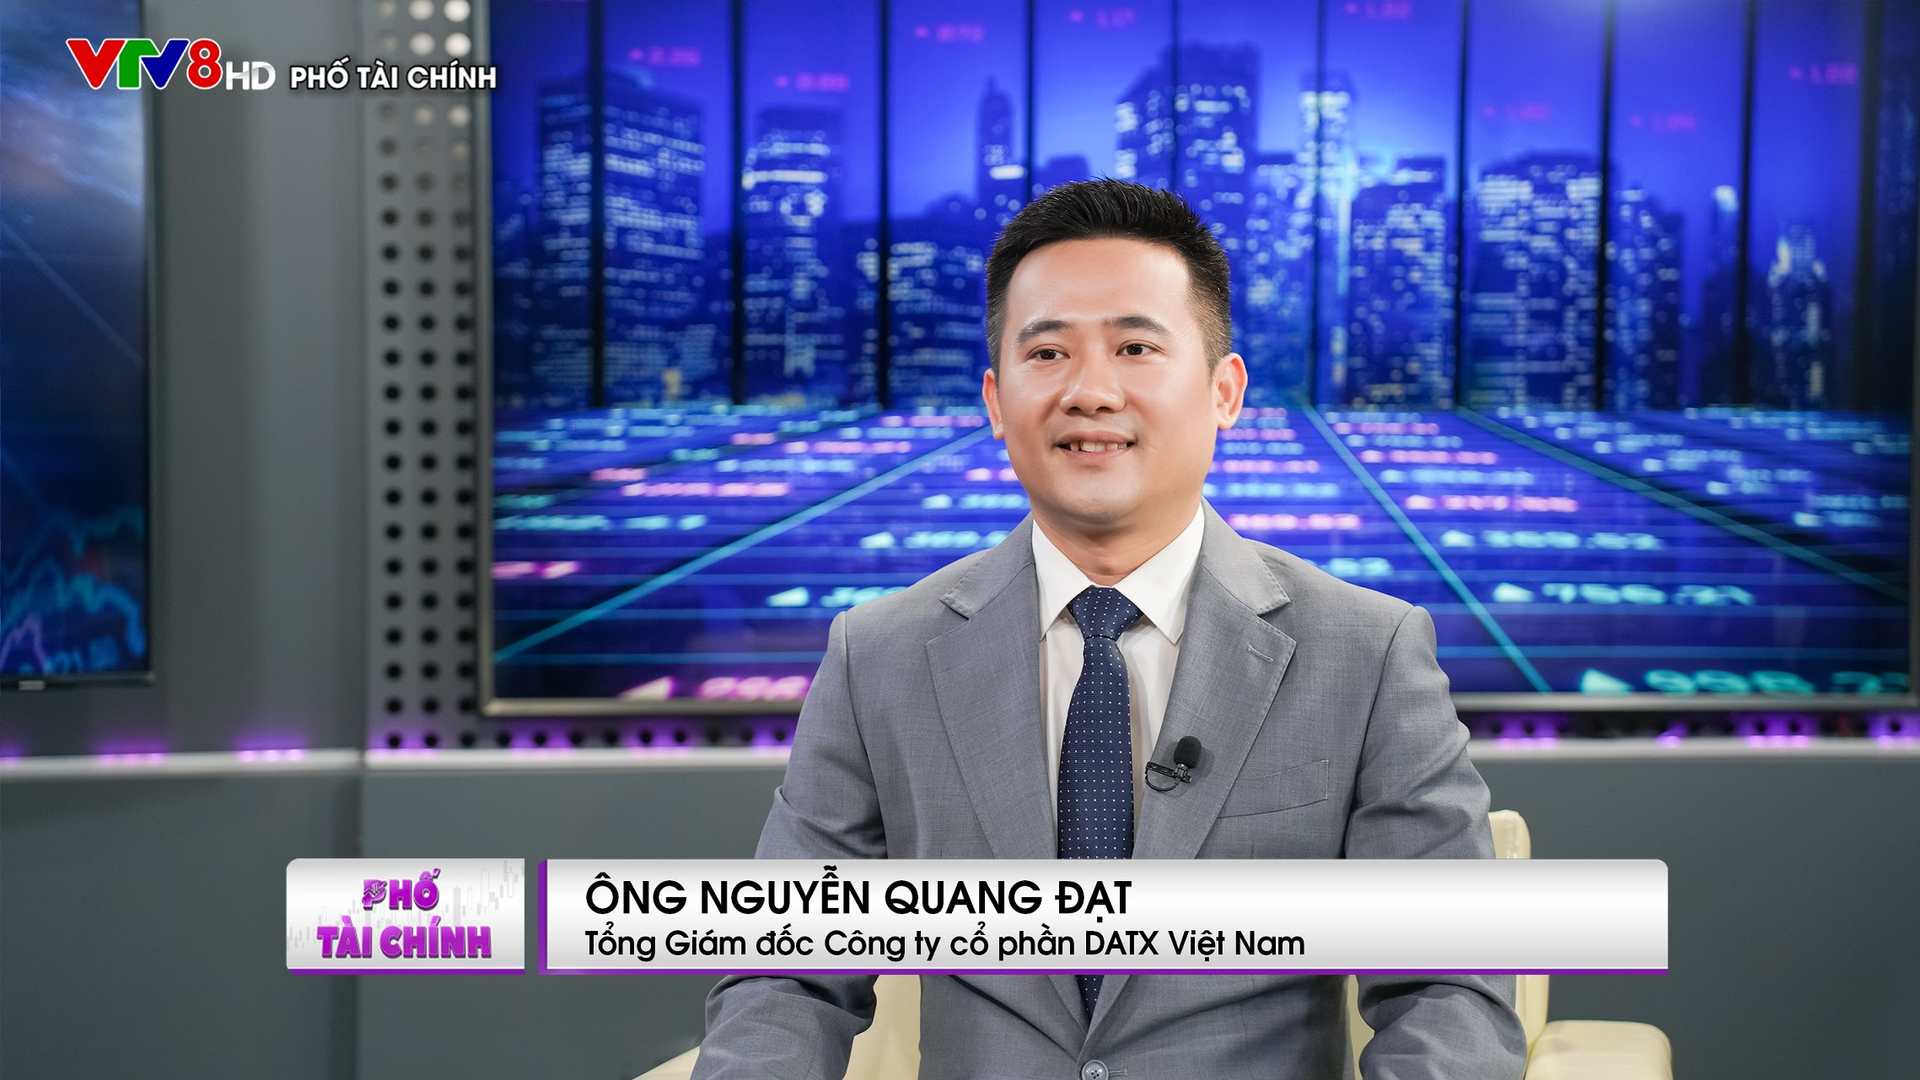 Tổng giám đốc DATX Việt Nam: Chứng khoán phái sinh đang giúp thị trường cơ sở đỡ giảm sâu trong những đợt biến động lớn - Ảnh 3.